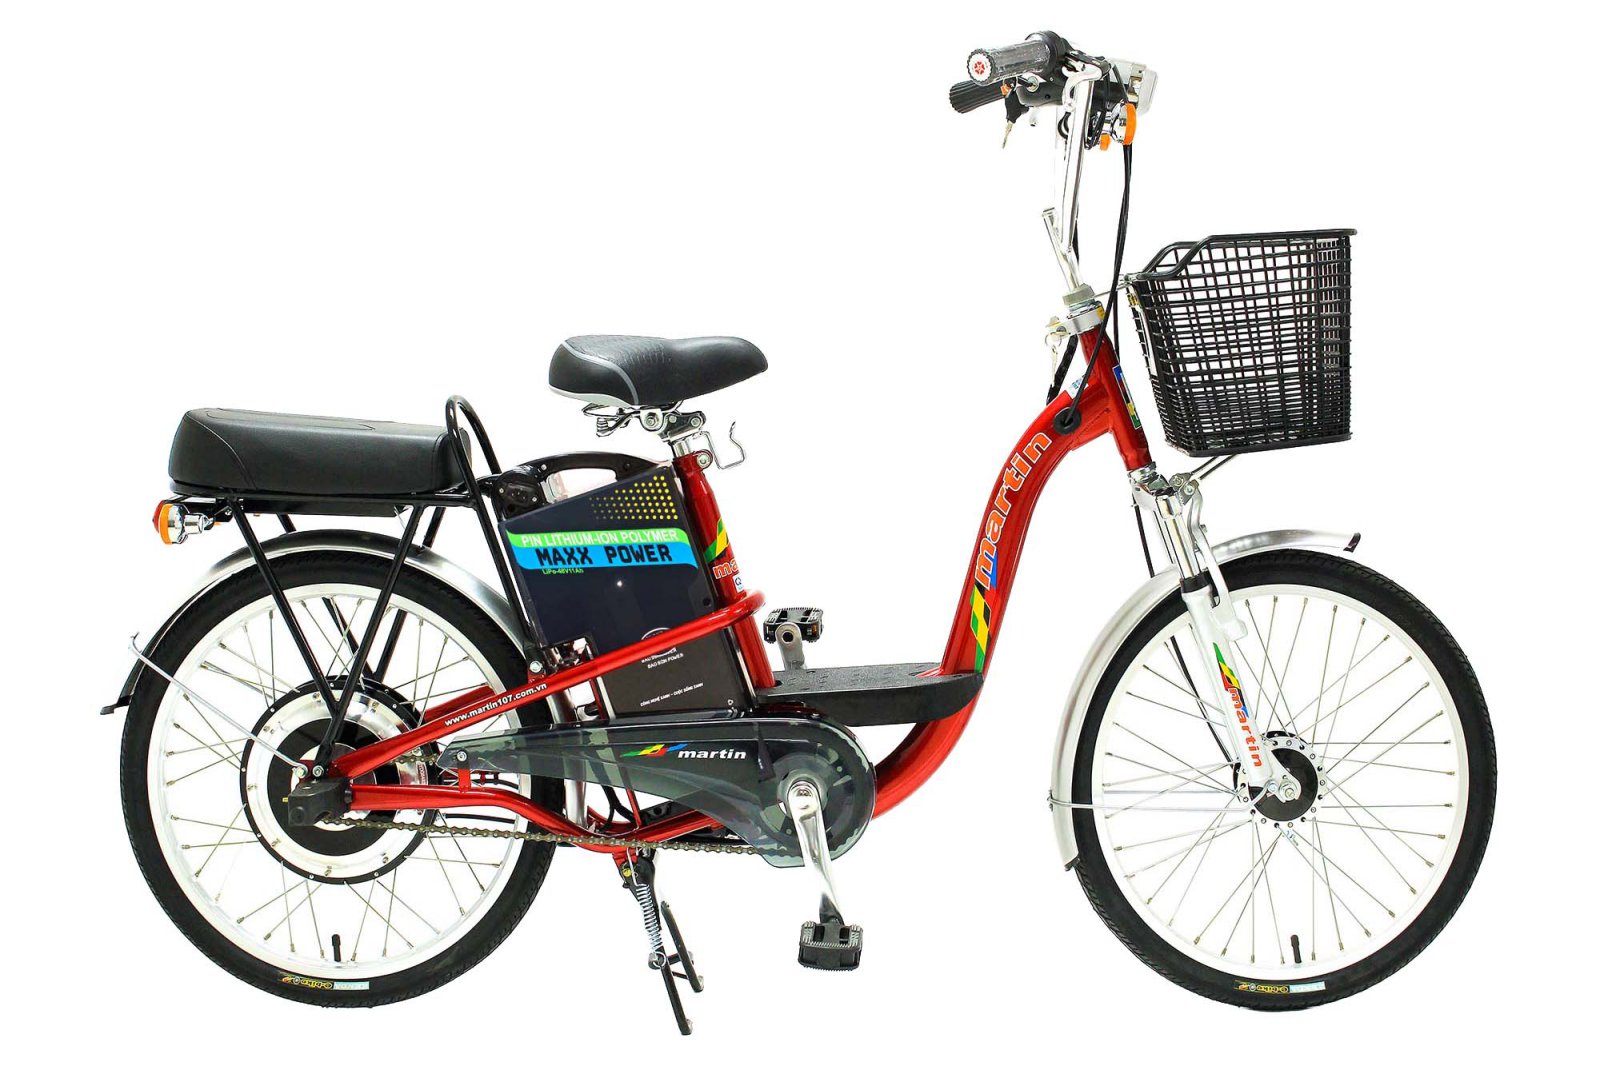 Mua bán Xe đạp điện Martin 107 giá rẻ chính chủ  Chợ Tốt Xe